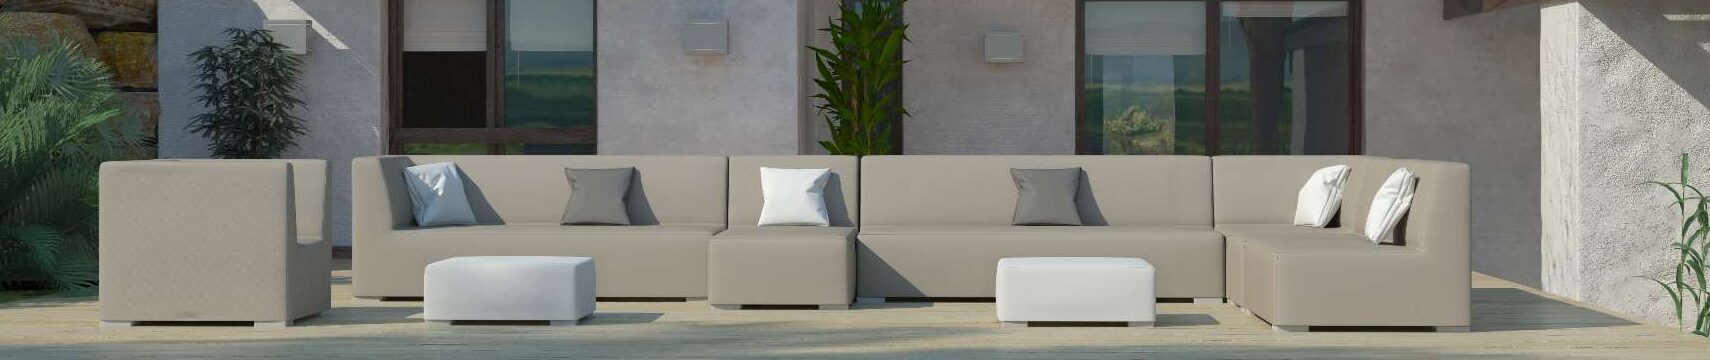 muebles de aluminio para terraza